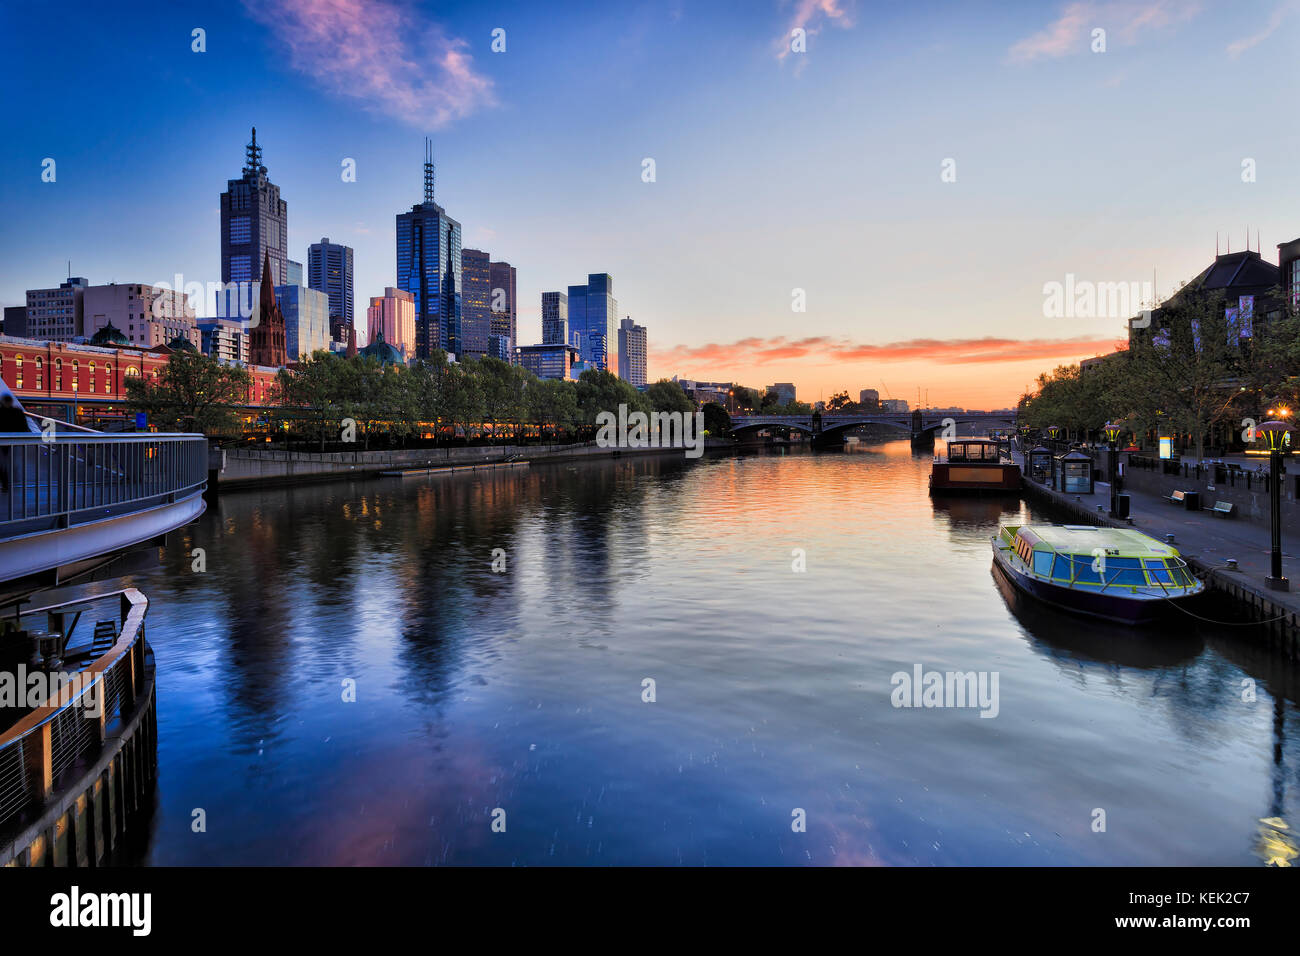 Ciudad de Melbourne CBD en la zona ribereña a lo largo del río Yarra con la estación Flinders y el príncipe puente al amanecer, reflejando las luces en aguas de Yarra. Foto de stock